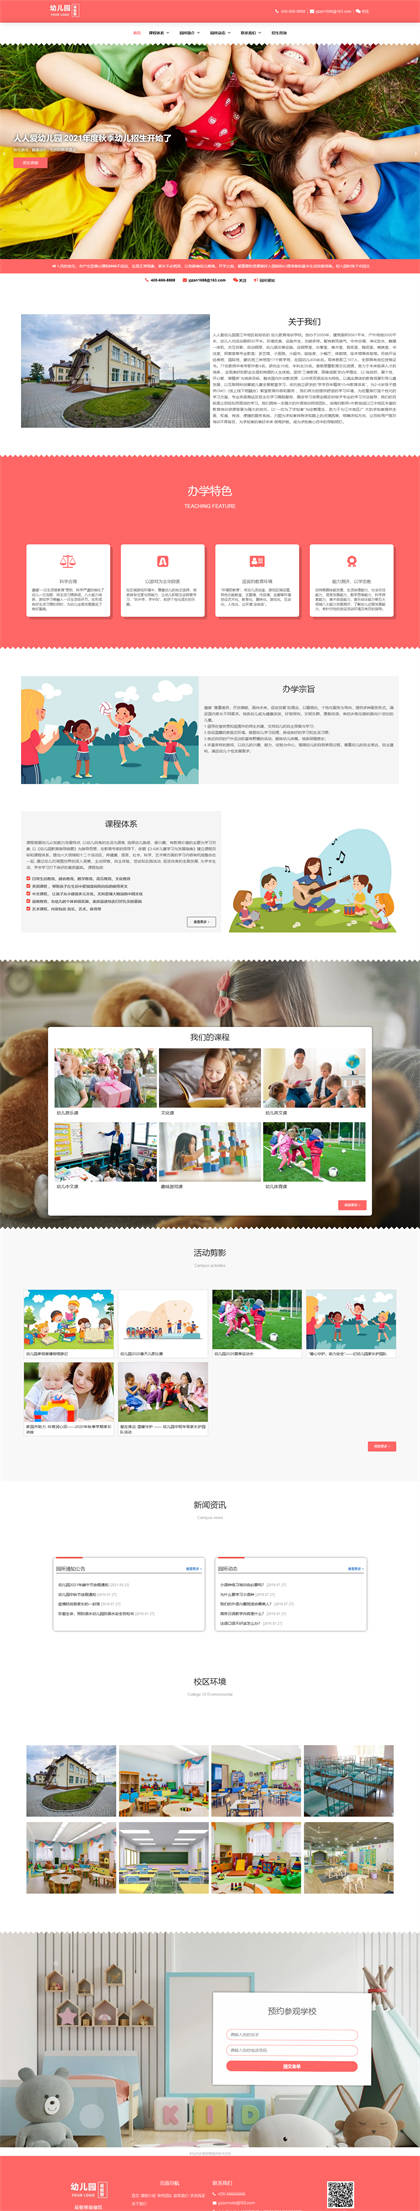 幼儿园-托儿所-早教中心-幼儿培训-早教机构网站模板网站模板图片